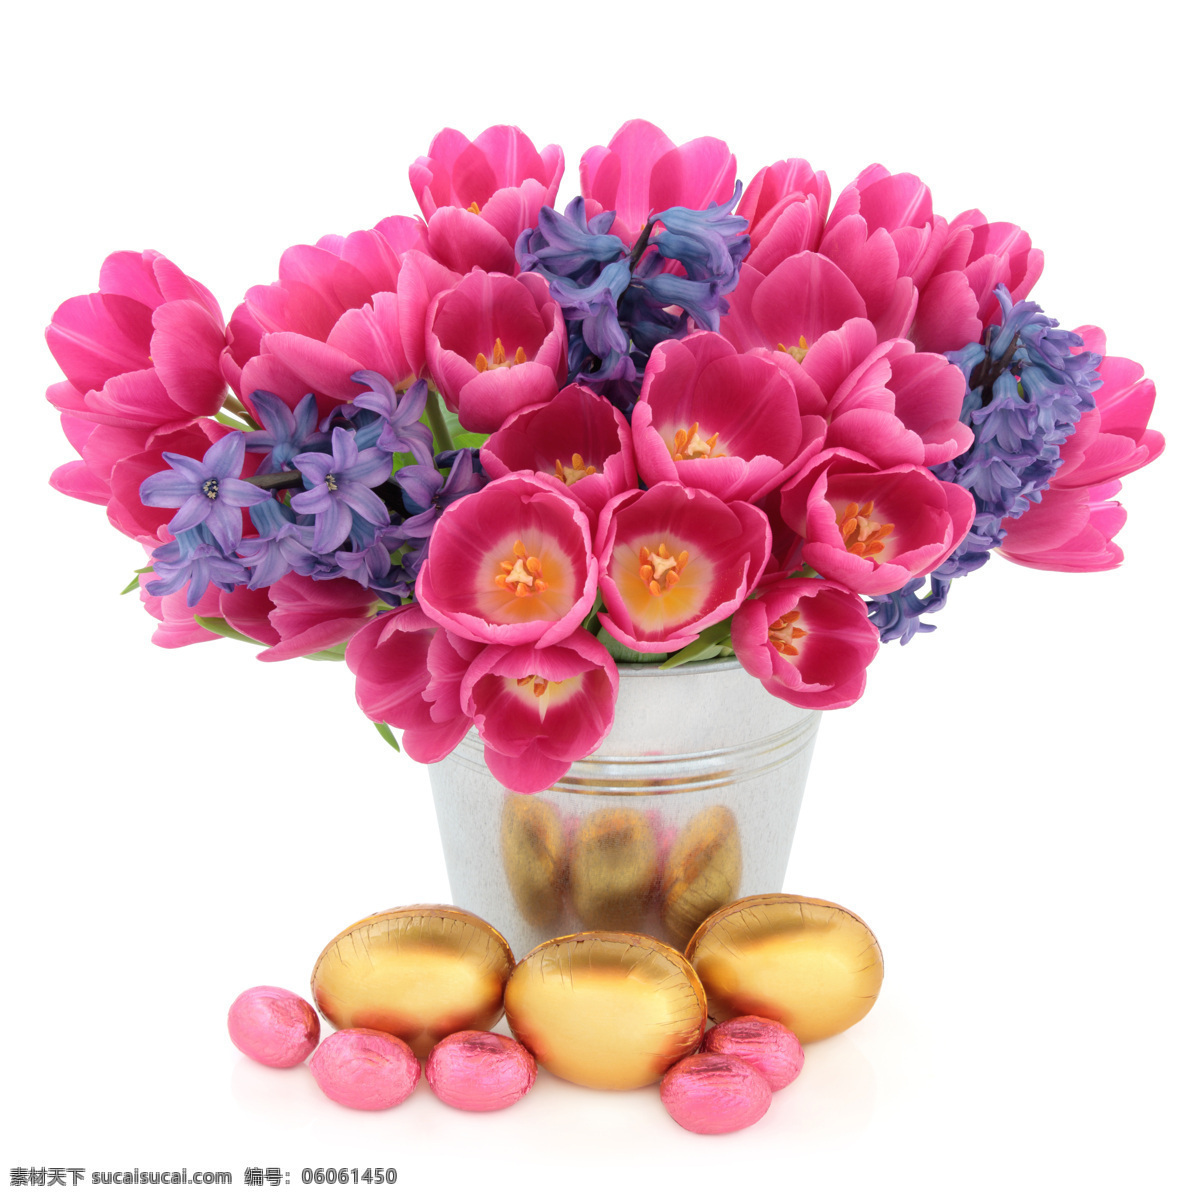 鲜花 彩蛋 素材图片 花朵 金蛋 复活节 花束 盆景 节日庆典 生活百科